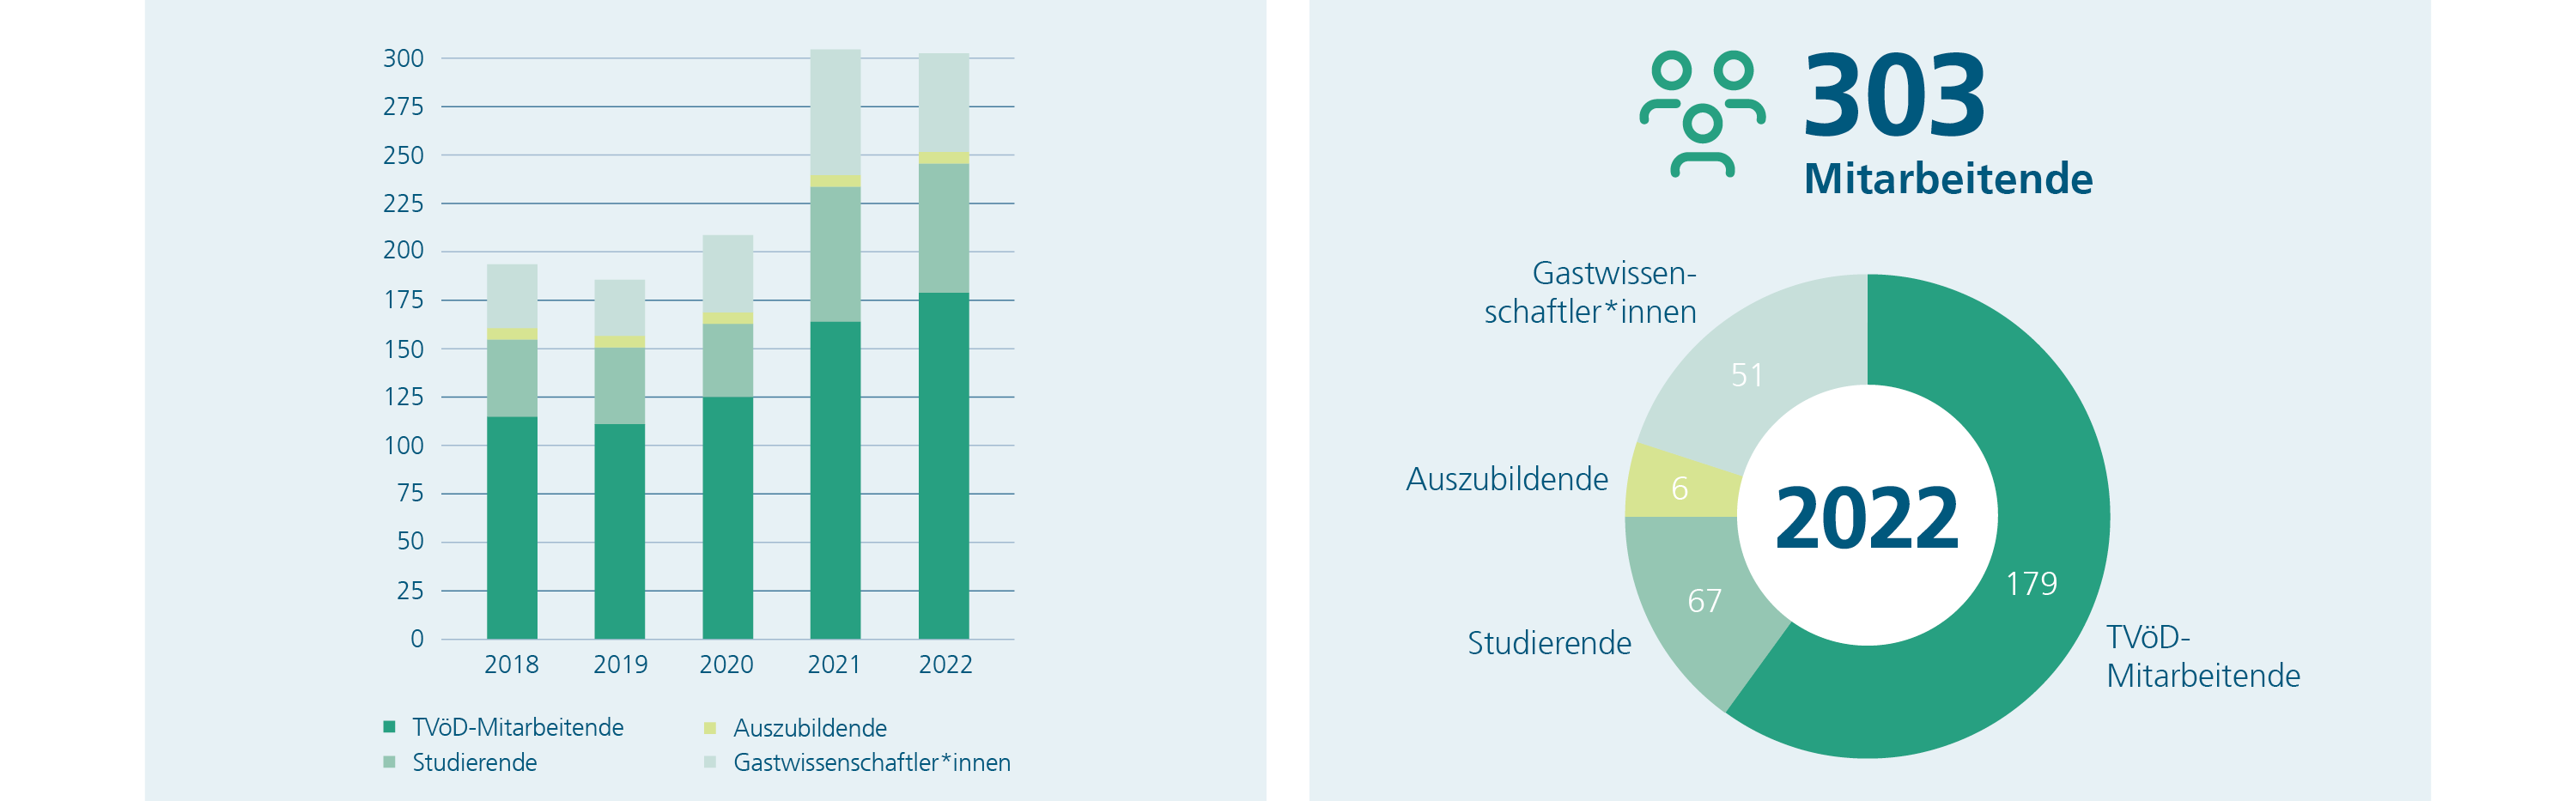 Peronalentwicklung am Fraunhofer IST 2018-2022